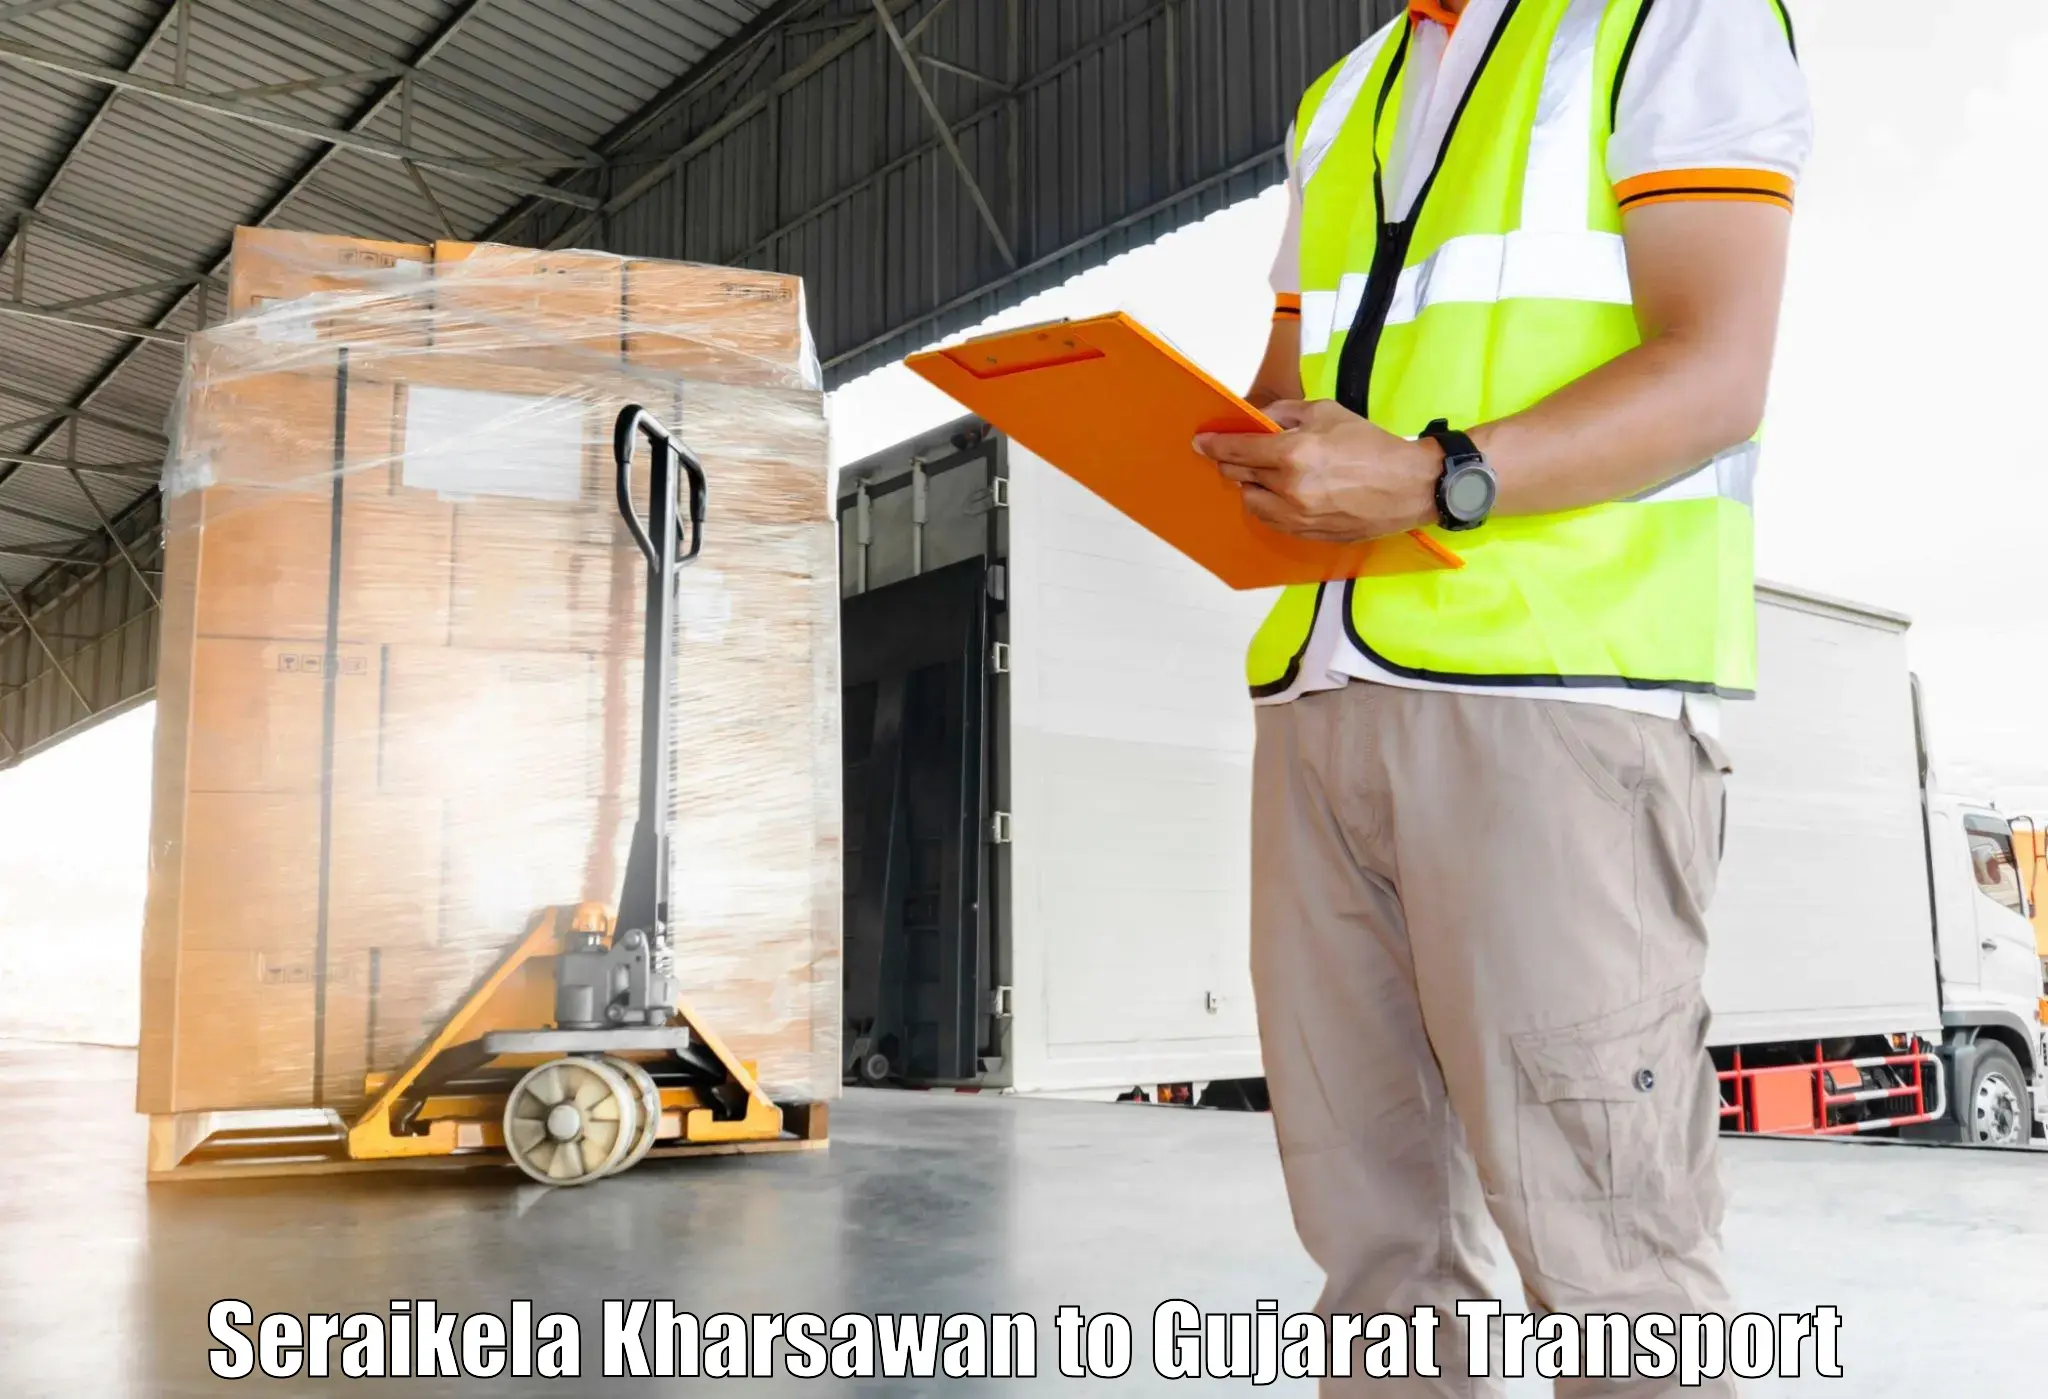 Cargo transportation services Seraikela Kharsawan to Katodara